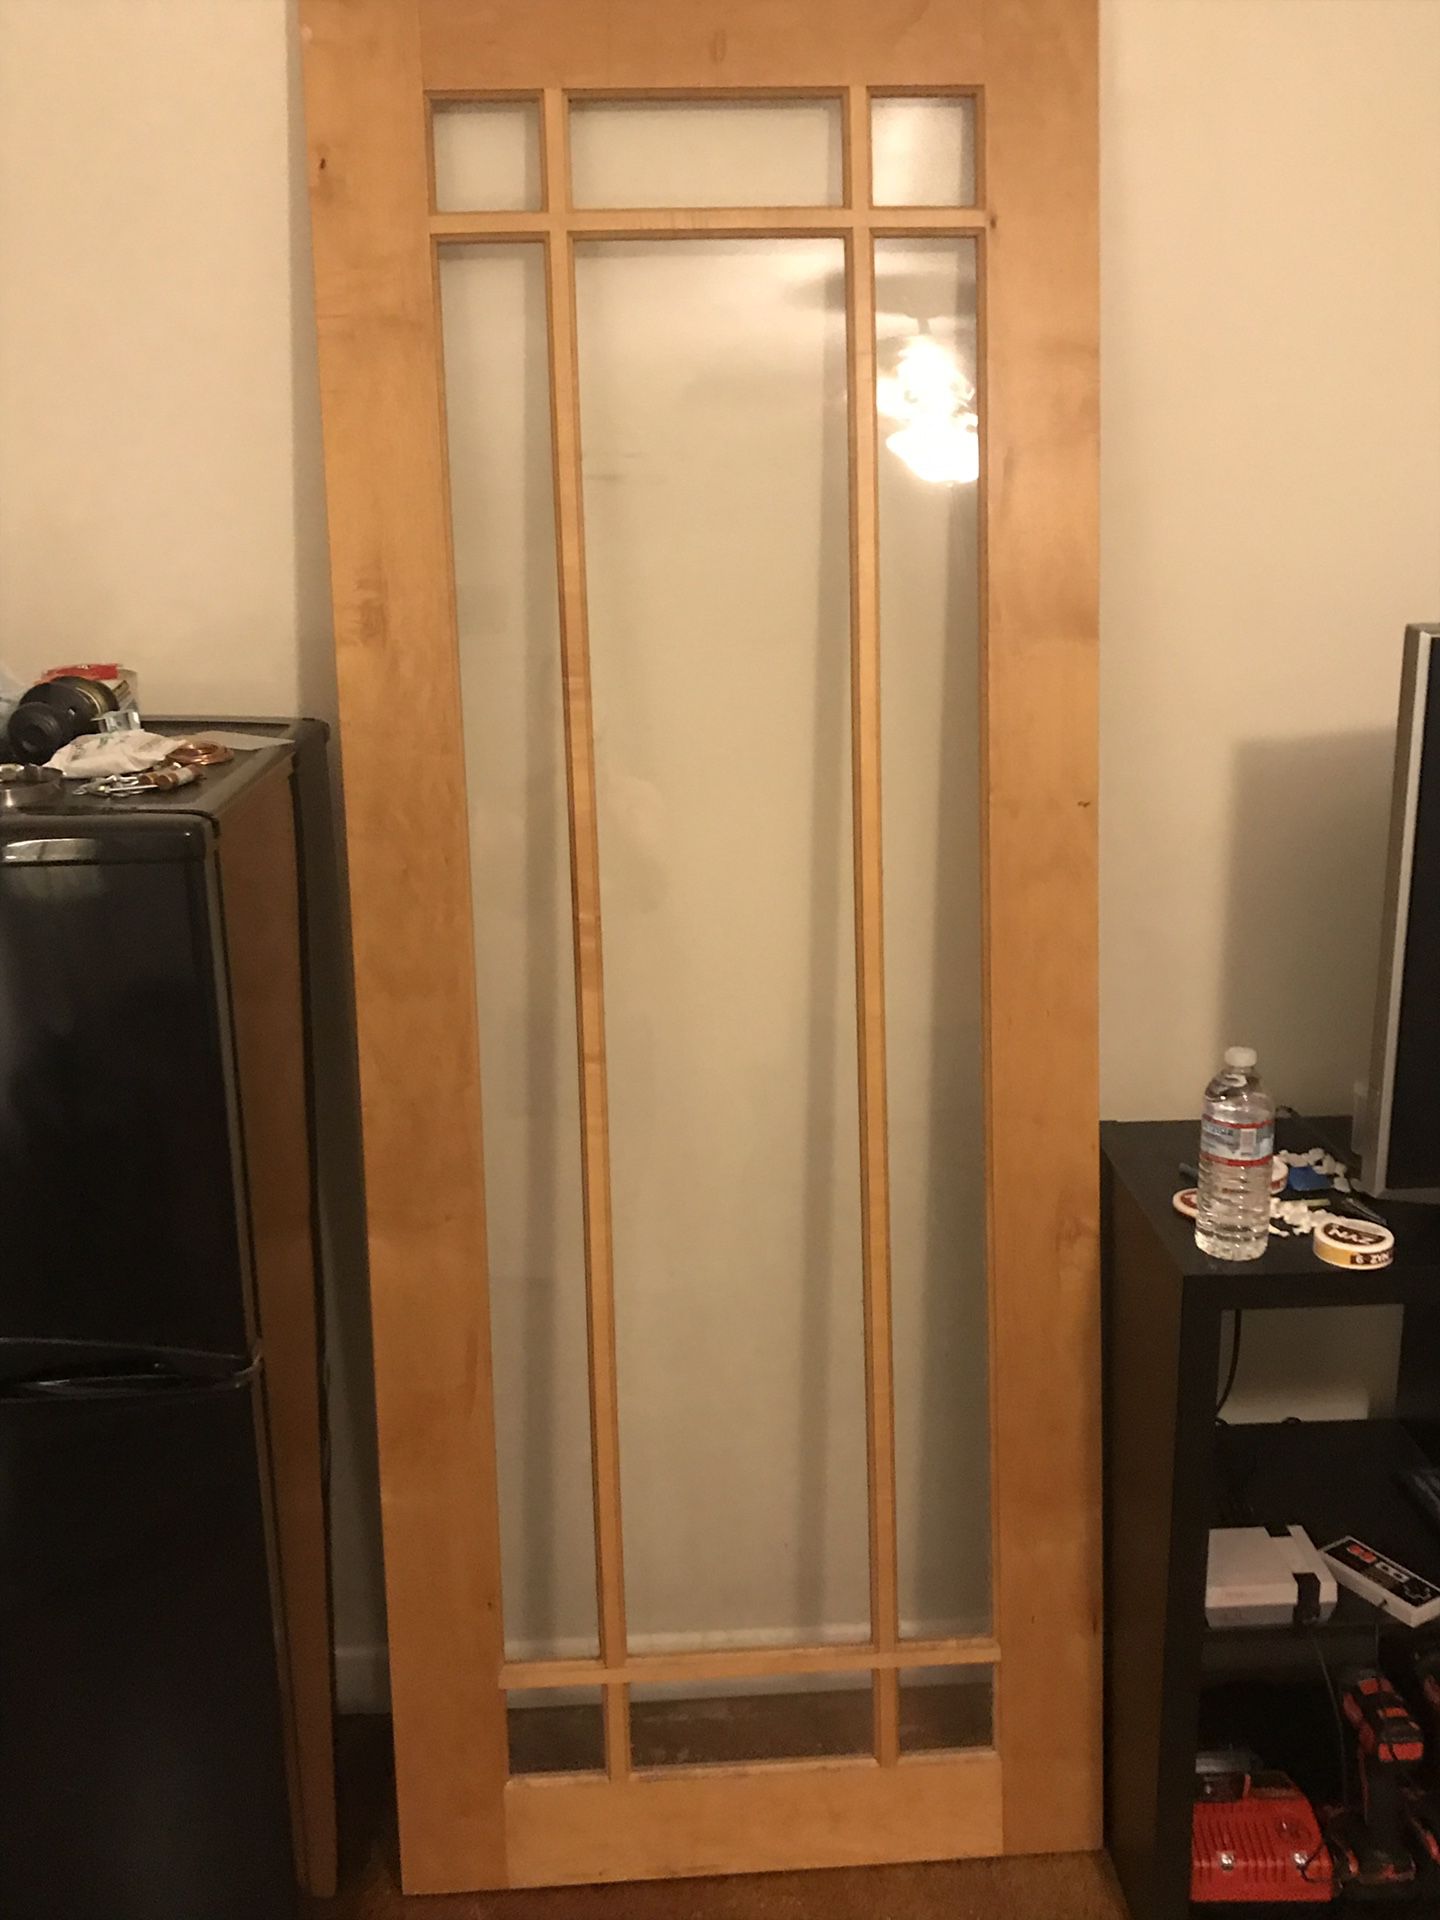 Solid wood/ glass door